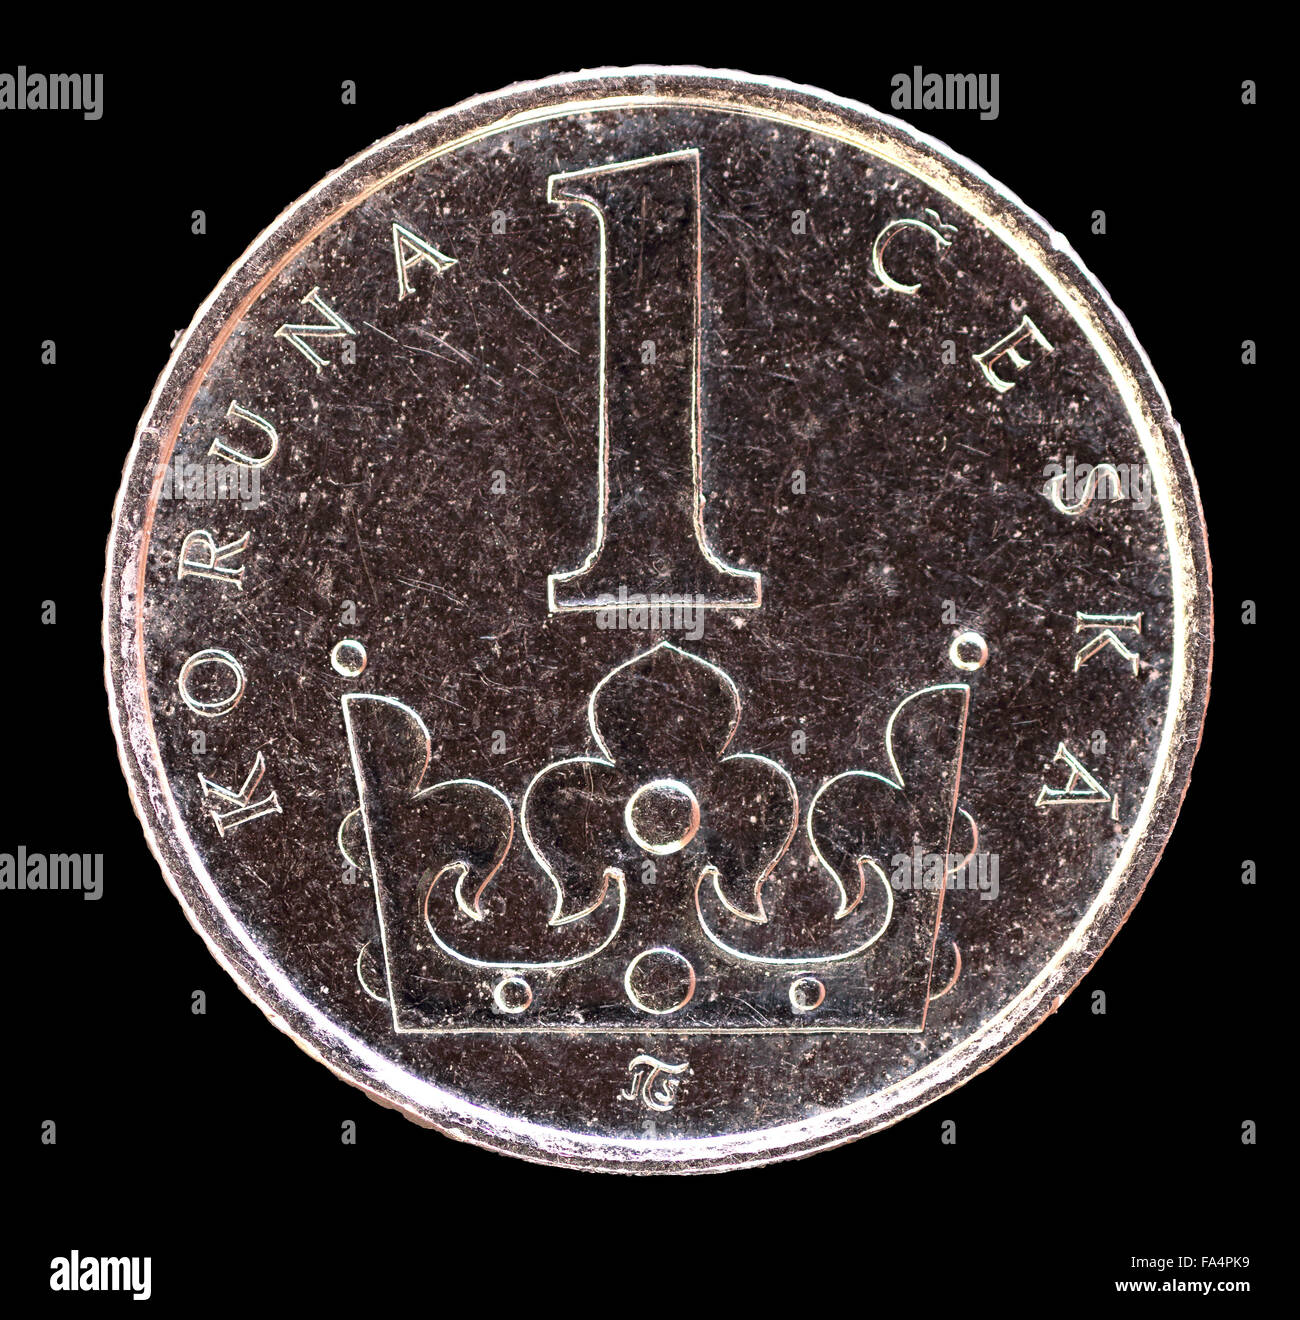 Das Heck Gesicht eine Krone Münze, ausgestellt durch die Tschechische Republik im Jahr 2009, Darstellung einer Krone. Bild auf schwarzem Hintergrund isoliert Stockfoto